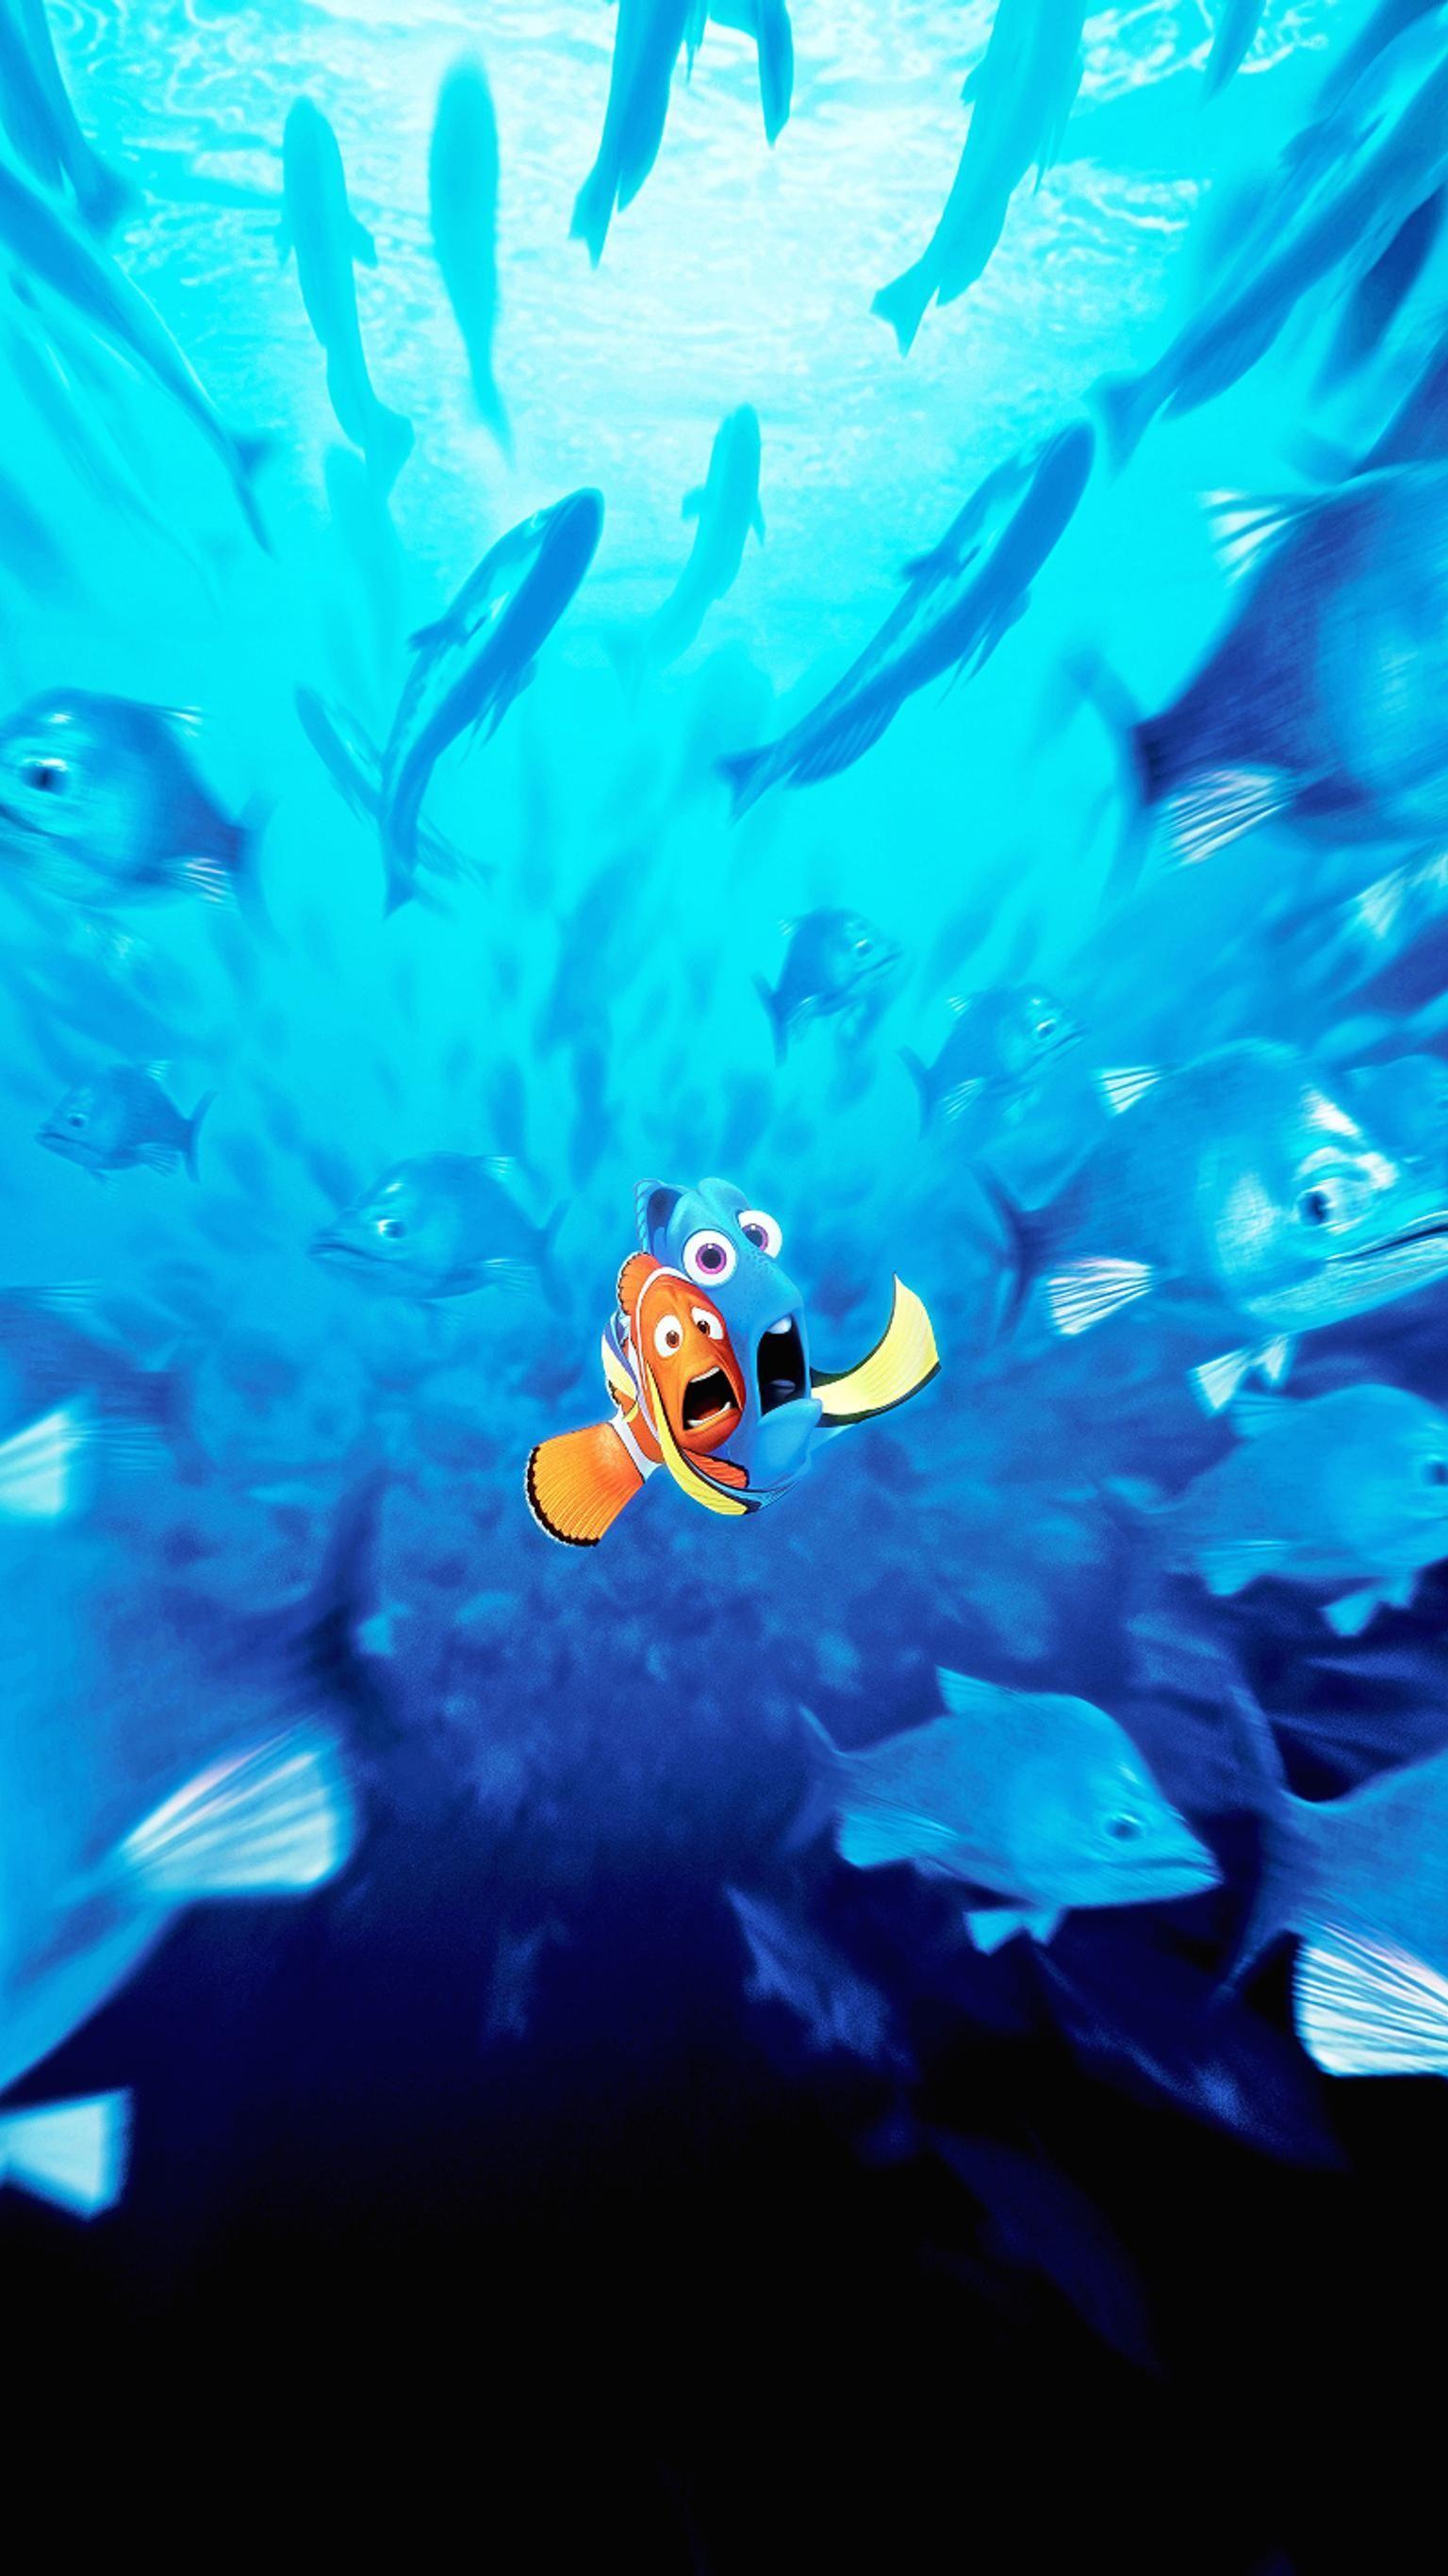 Finding Nemo Wallpaper Iphone